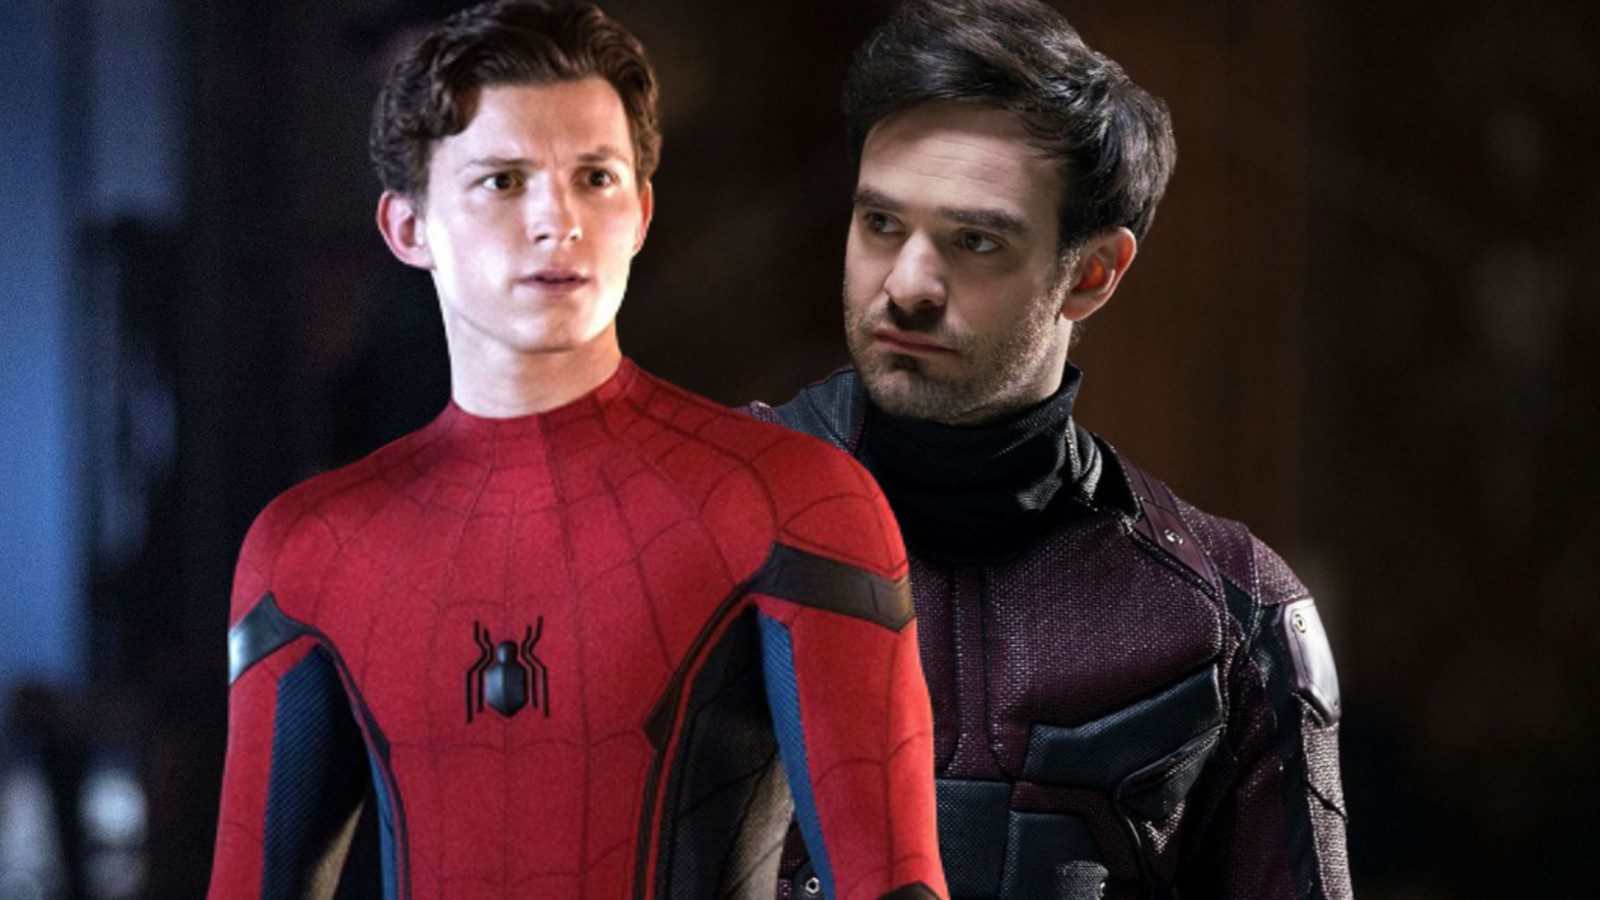 Spider-Man 4’ün Daredevil’i Kingpin’e karşı takım halinde oynayacağı söyleniyor